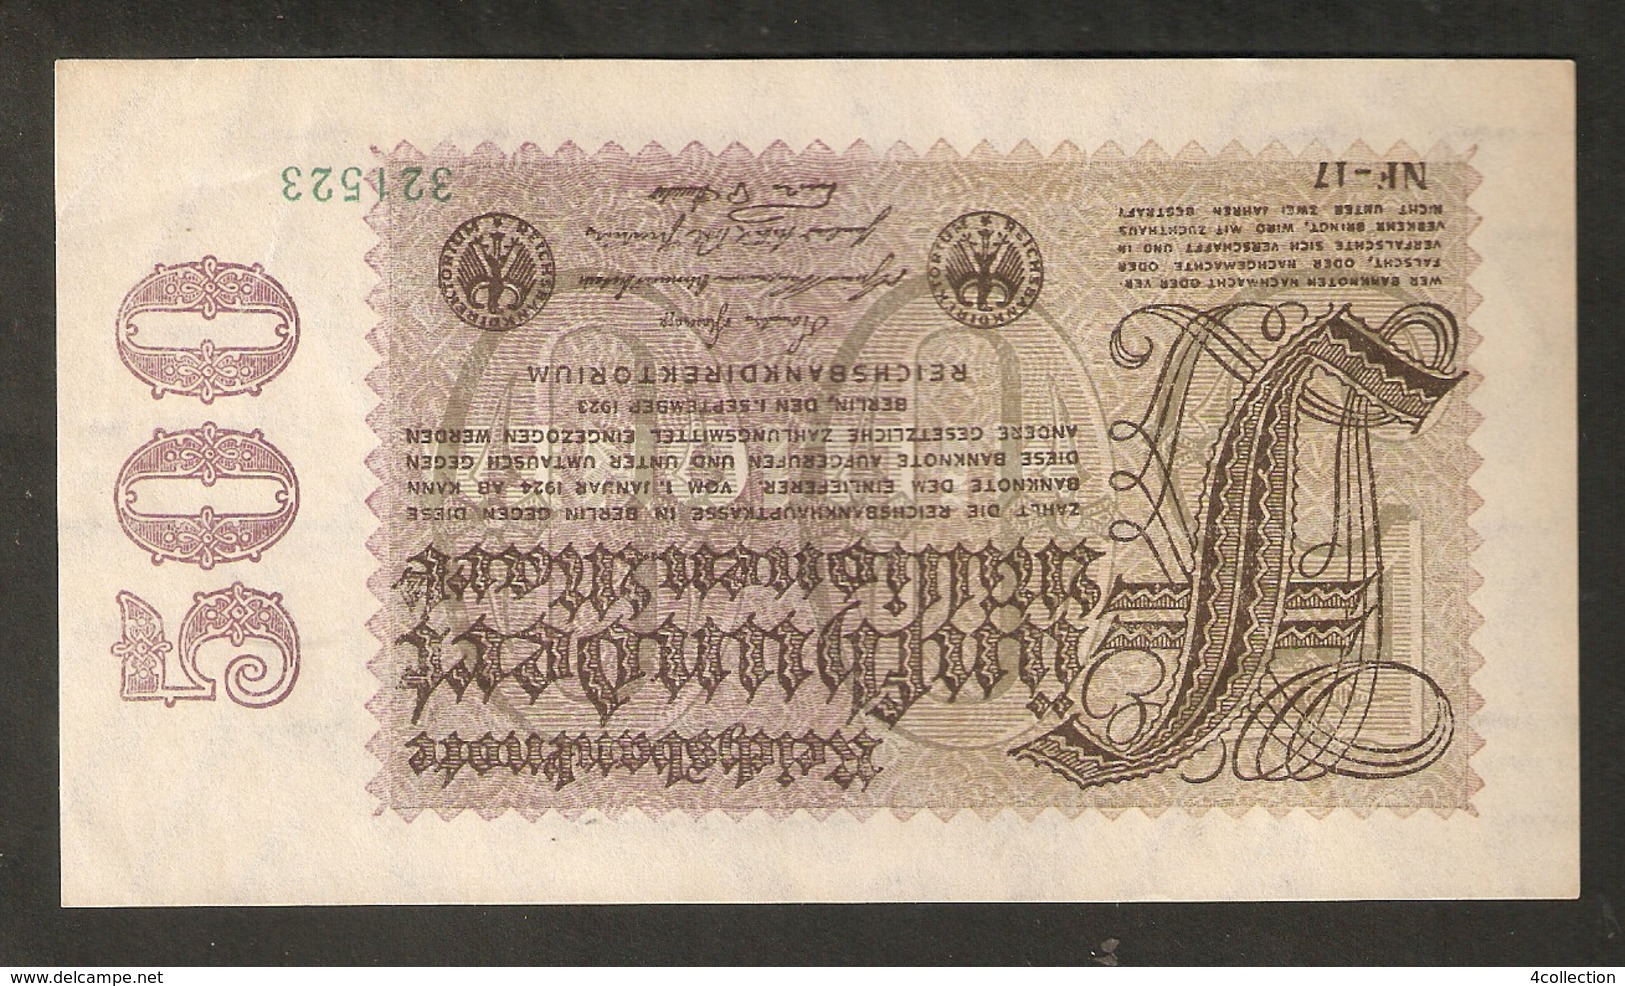 T. Germany Weimar Republic Reichsbanknote Funfhundert 500 Millionen Mark 1923 #321523 - 500 Mio. Mark